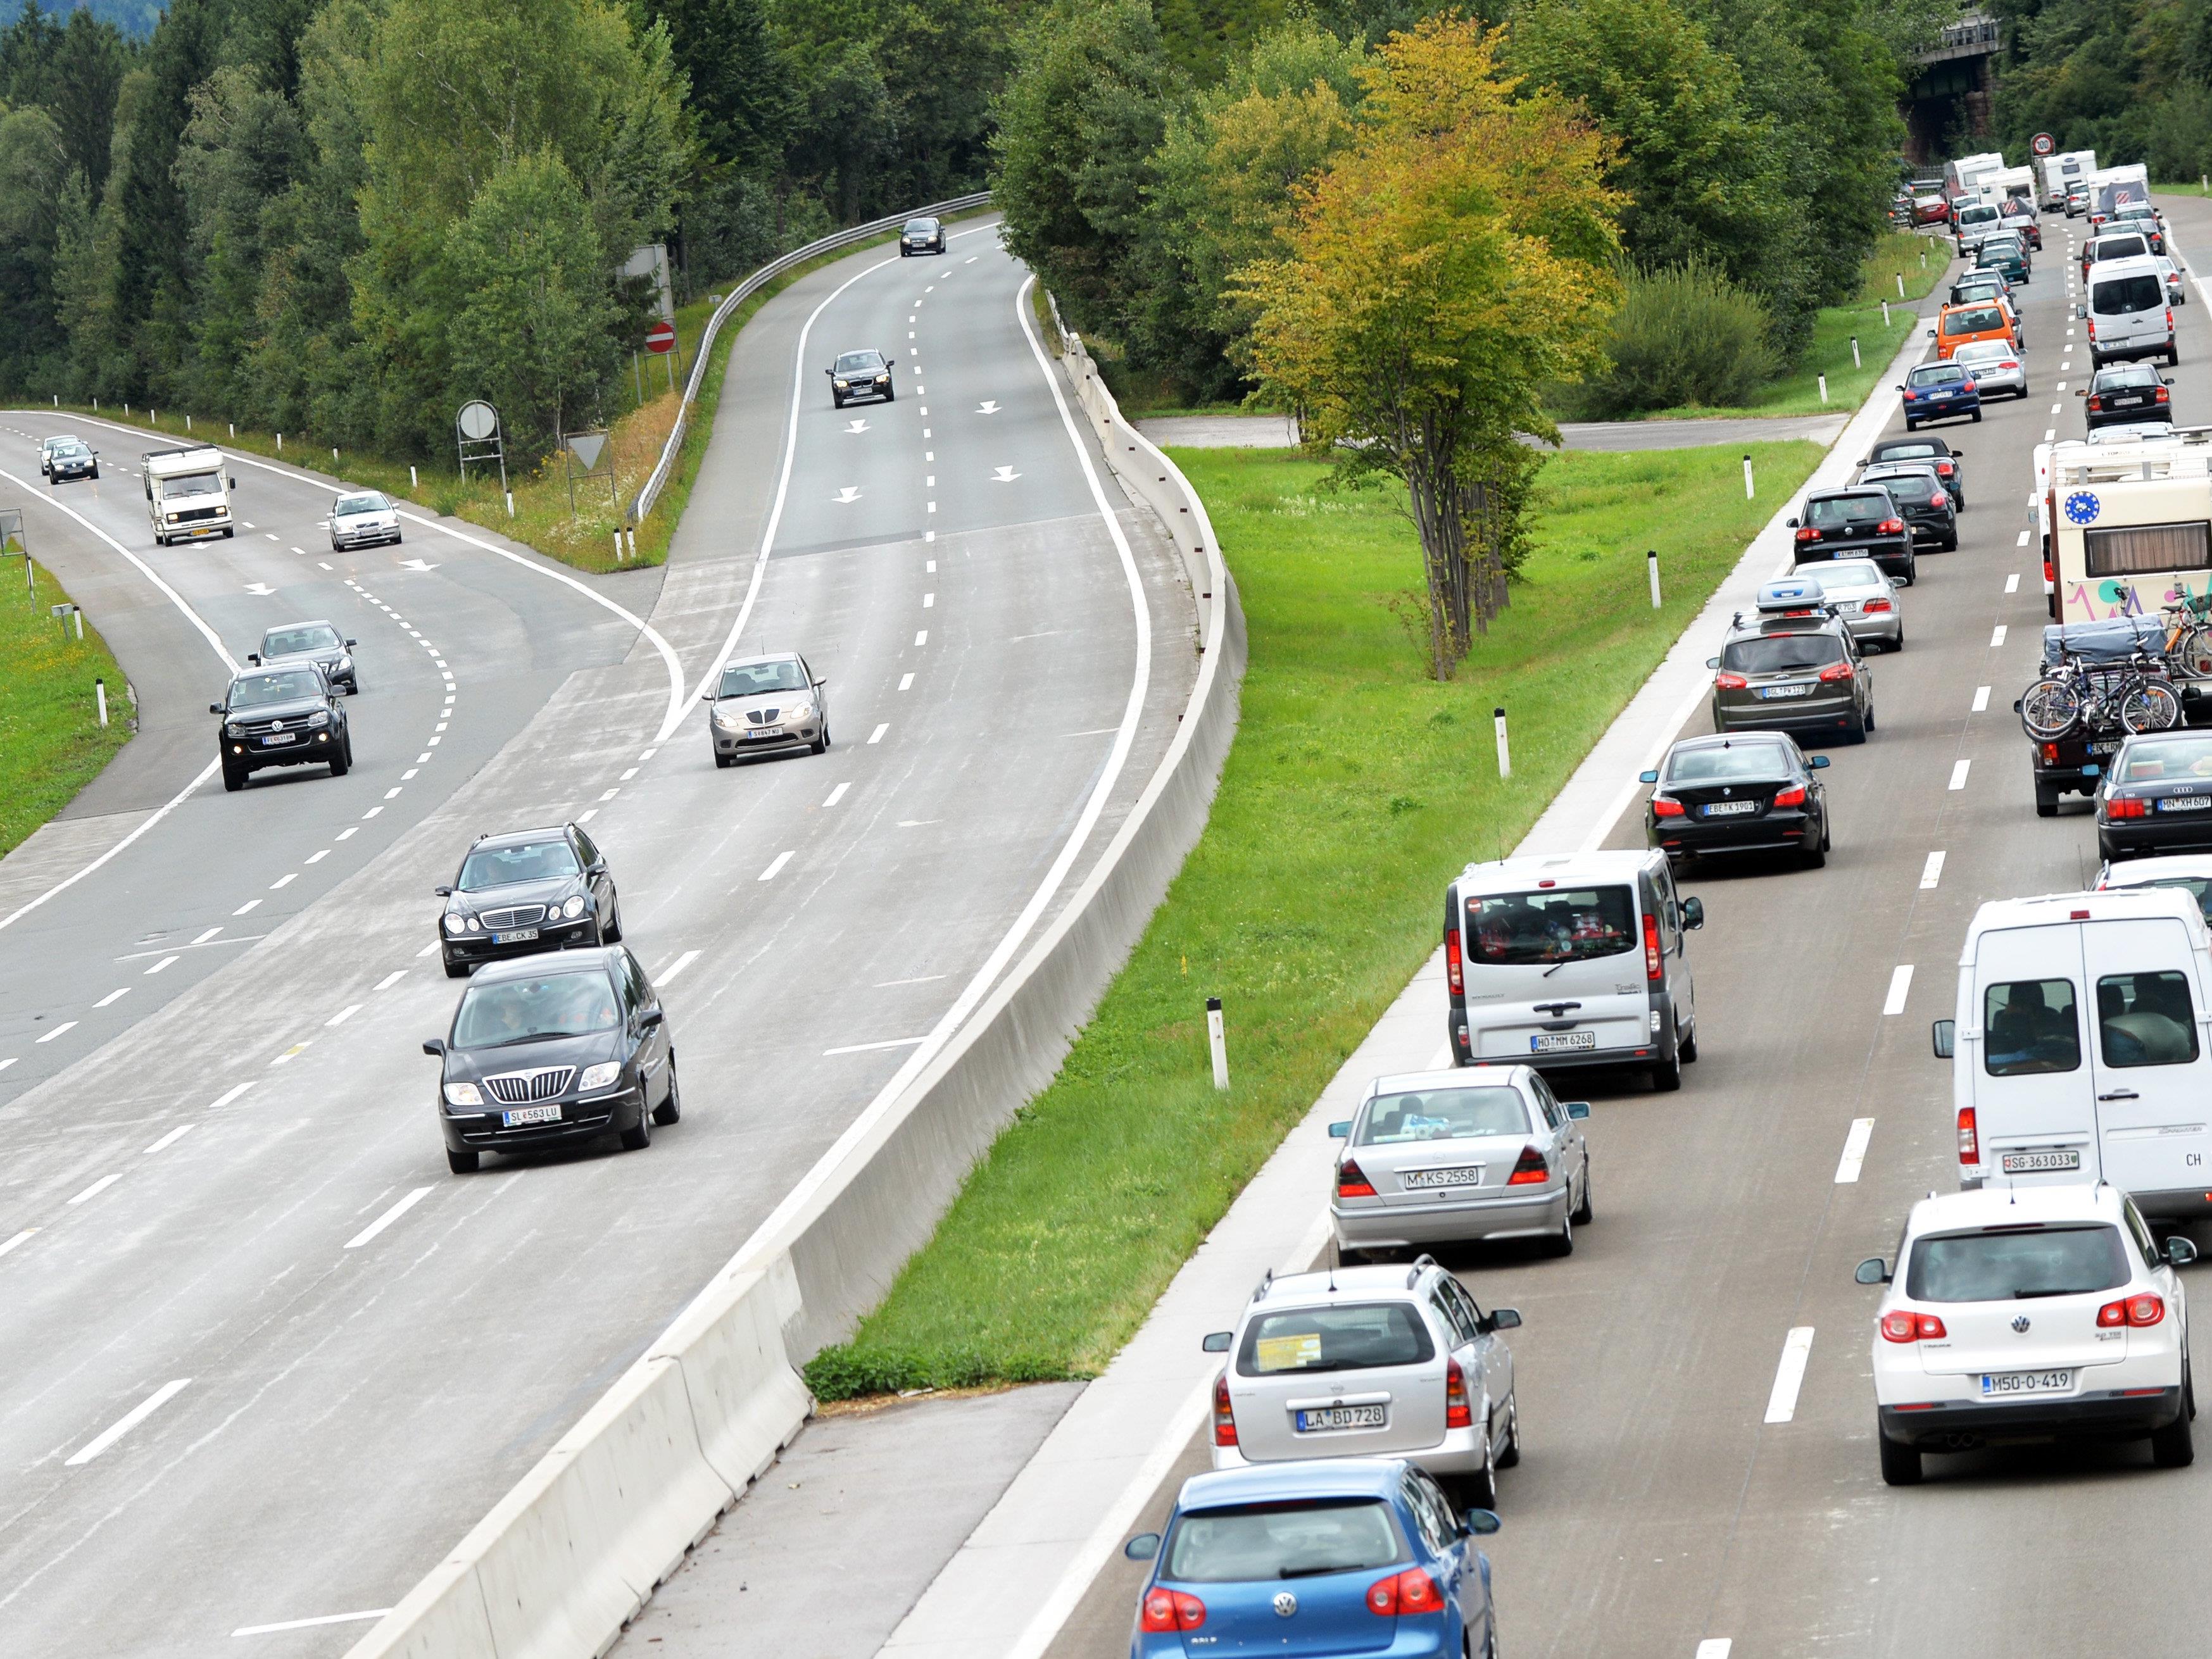 Herabfallende Gegenstände sind eine große Gefahr auf Autobahnen und Schnellstraßen.